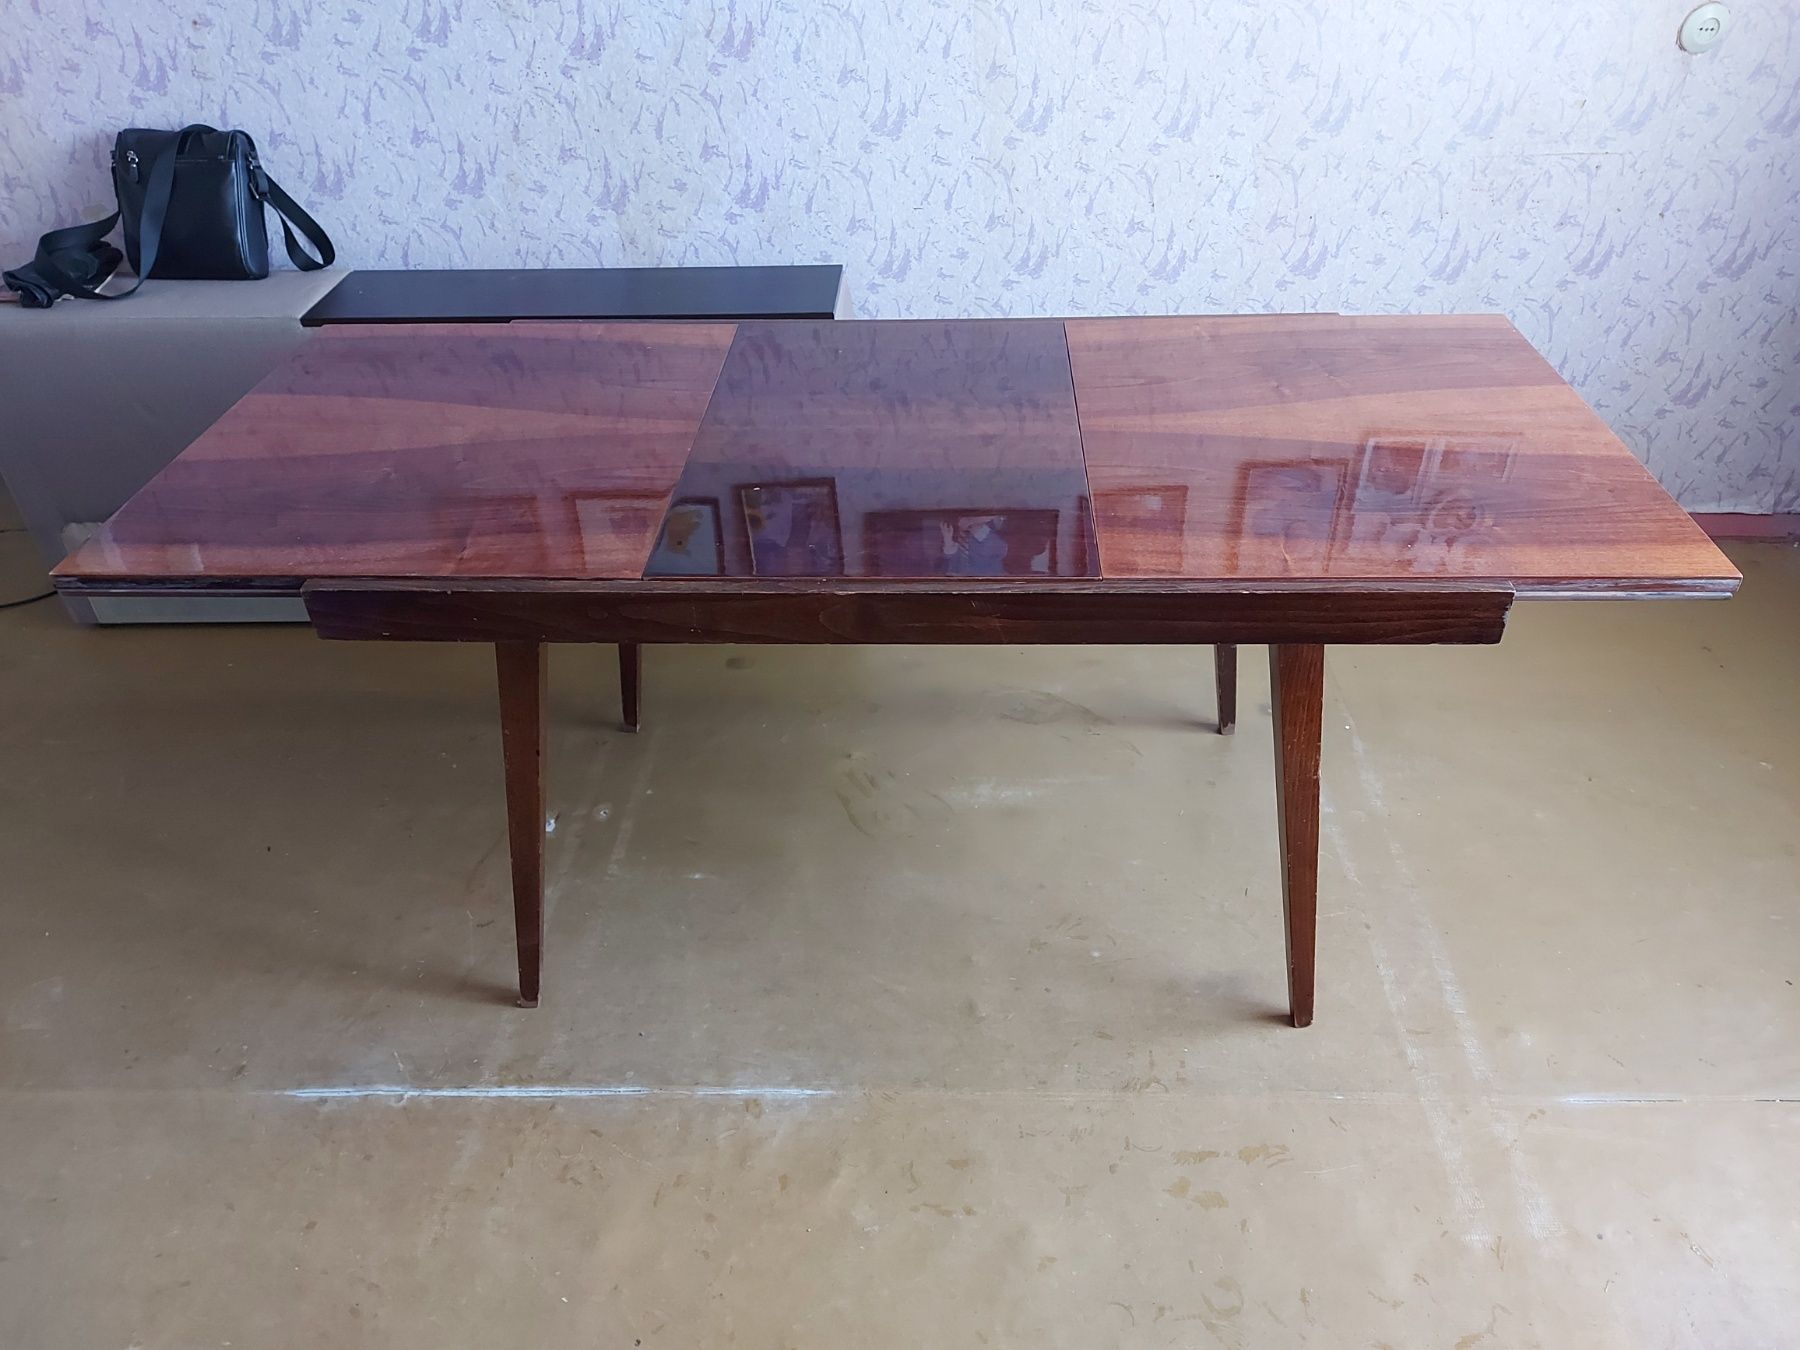 Деревянный обеденный стол